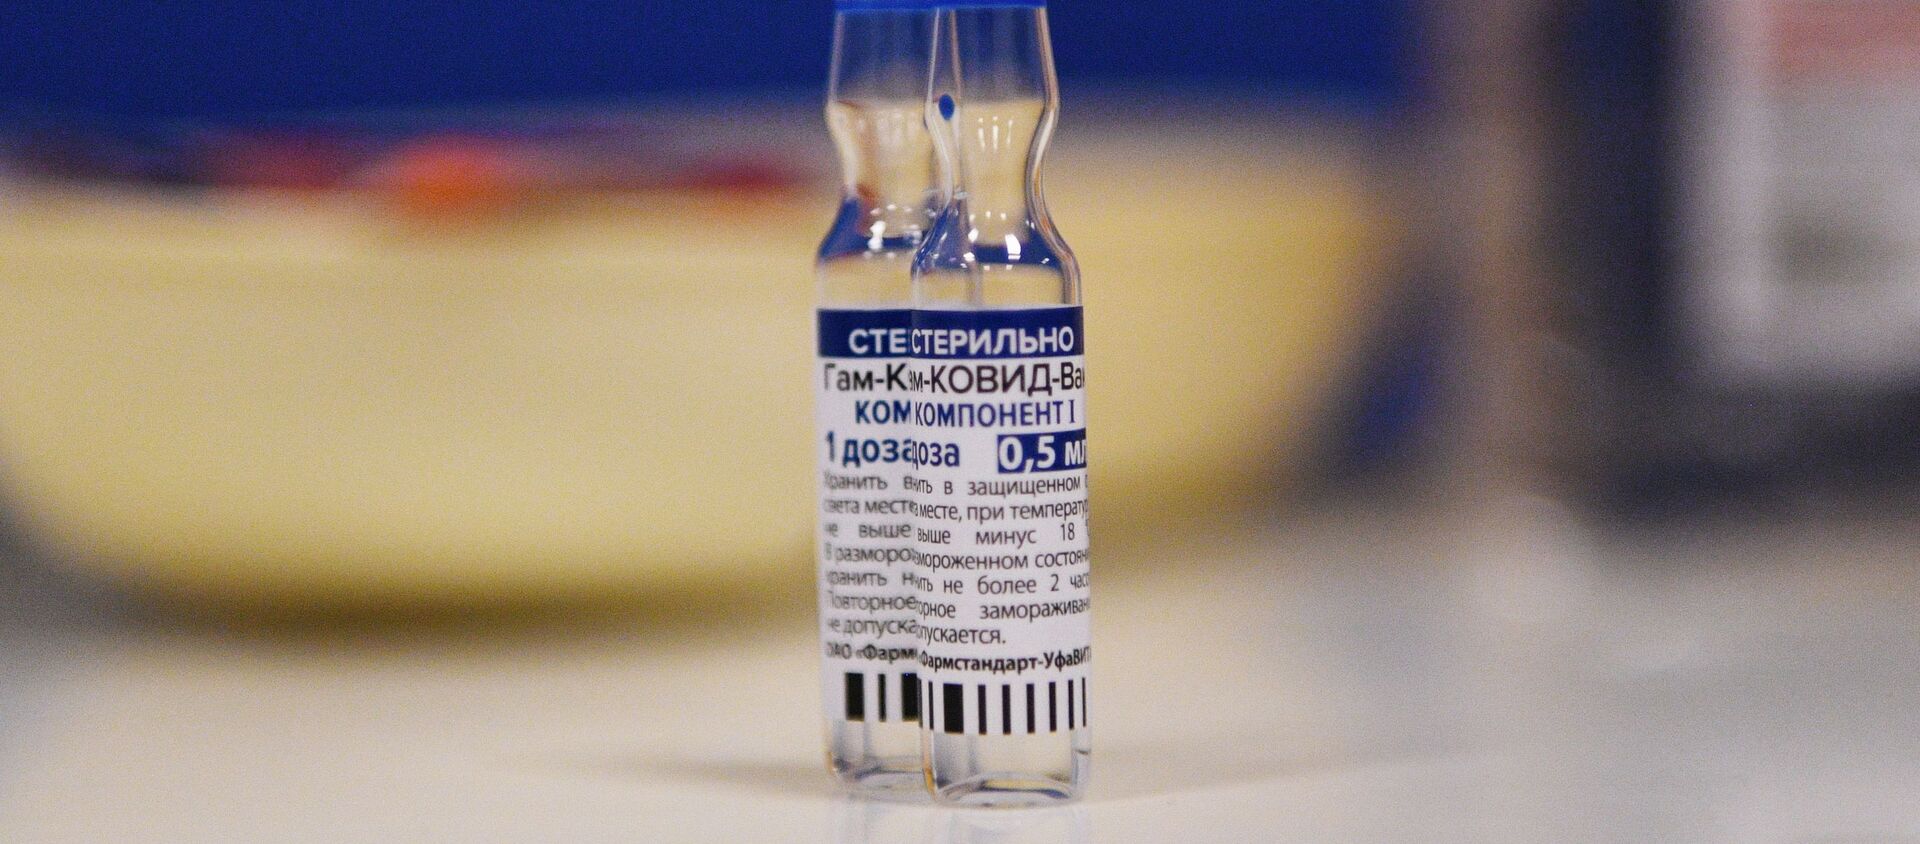 Вакцинация от COVID-19 в торговых центрах Москвы - Sputnik Кыргызстан, 1920, 06.03.2021